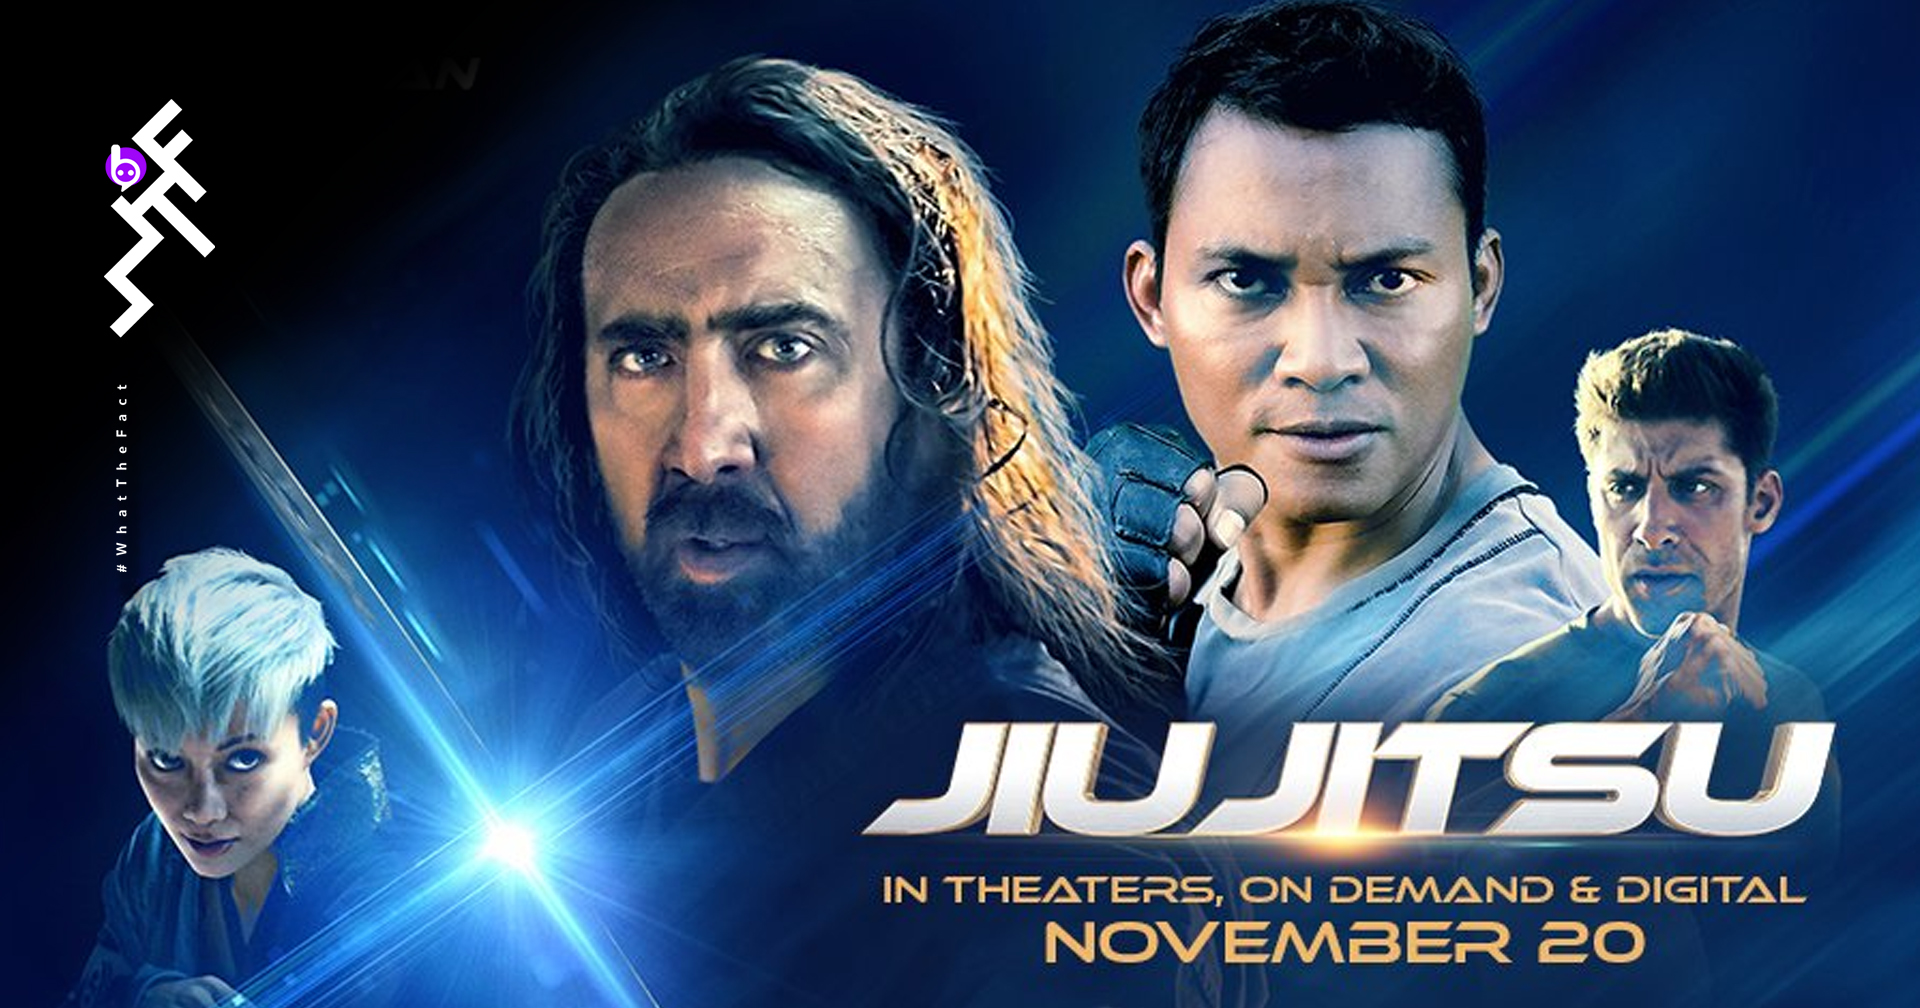 โปสเตอร์ไม่ไหวแต่ตัวอย่างช่วยได้ จา พนม ปะทะ Nicolas Cage ในหนังบู๊ไซไฟสุดมัน "Jiu Jitsu"